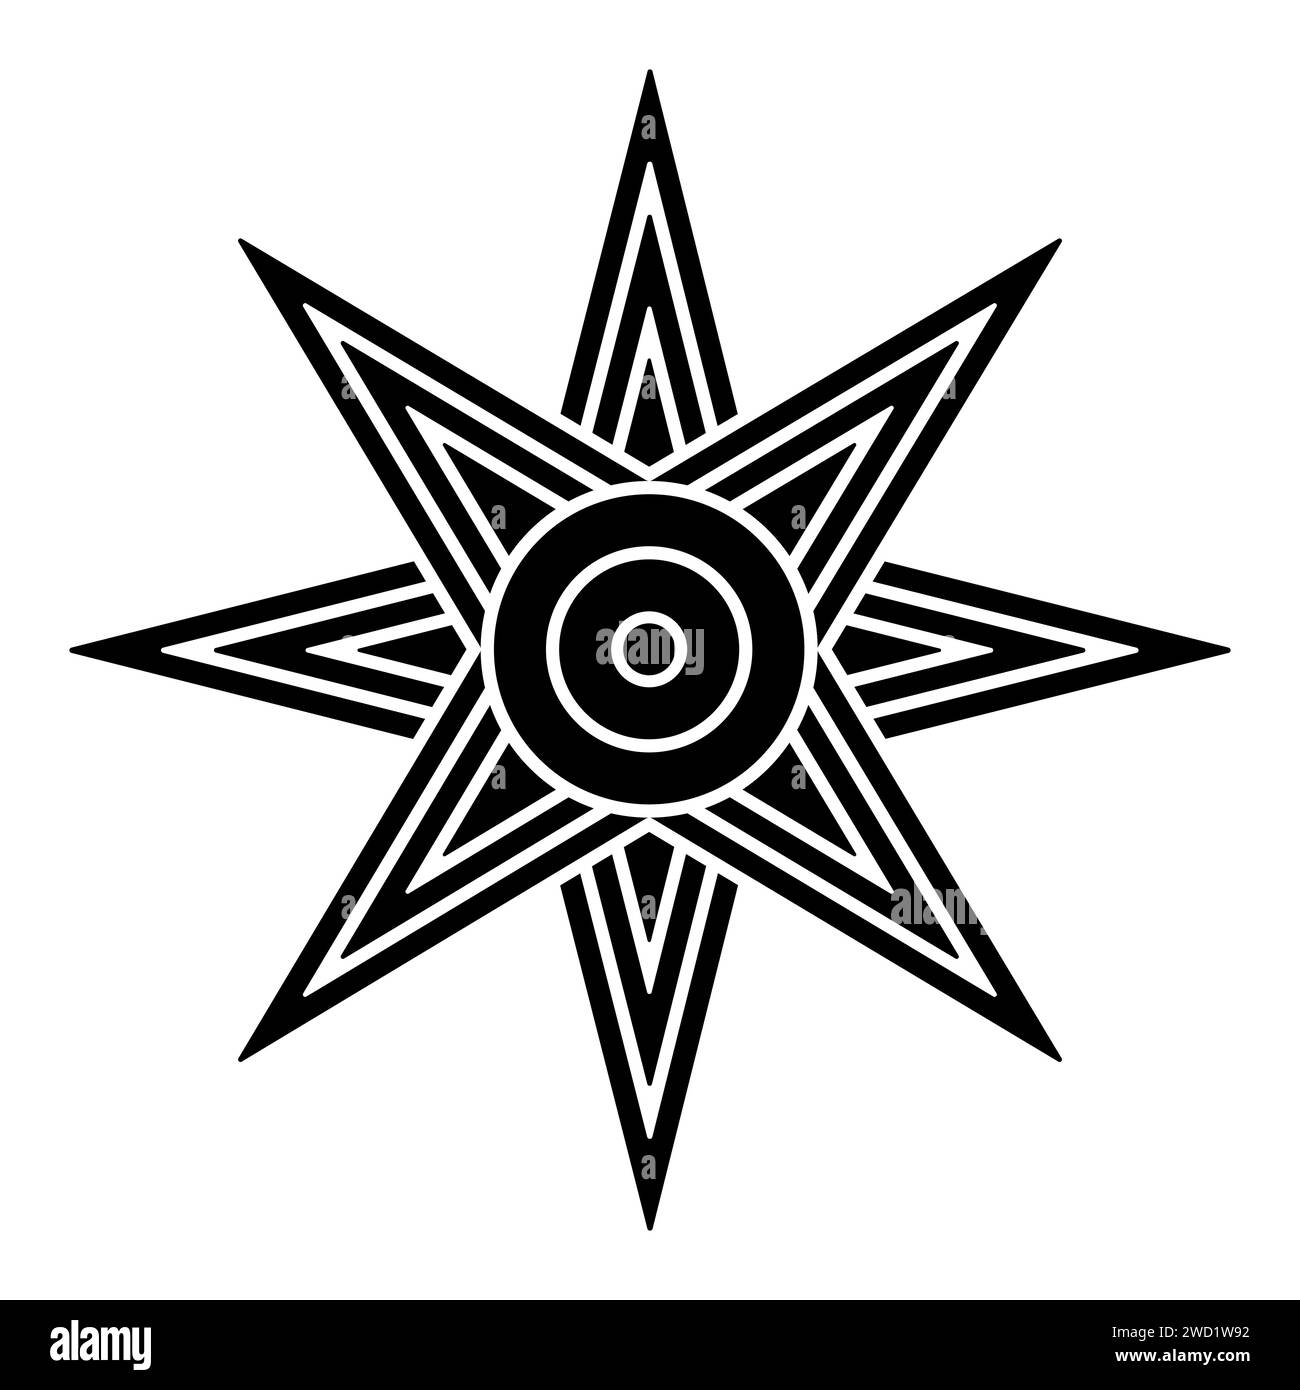 Étoile d'Ishtar ou Inanna, ou aussi étoile de Vénus est généralement représentée avec huit points. Symbole de l'ancienne déesse sumérienne Inanna, et Ishtar. Banque D'Images